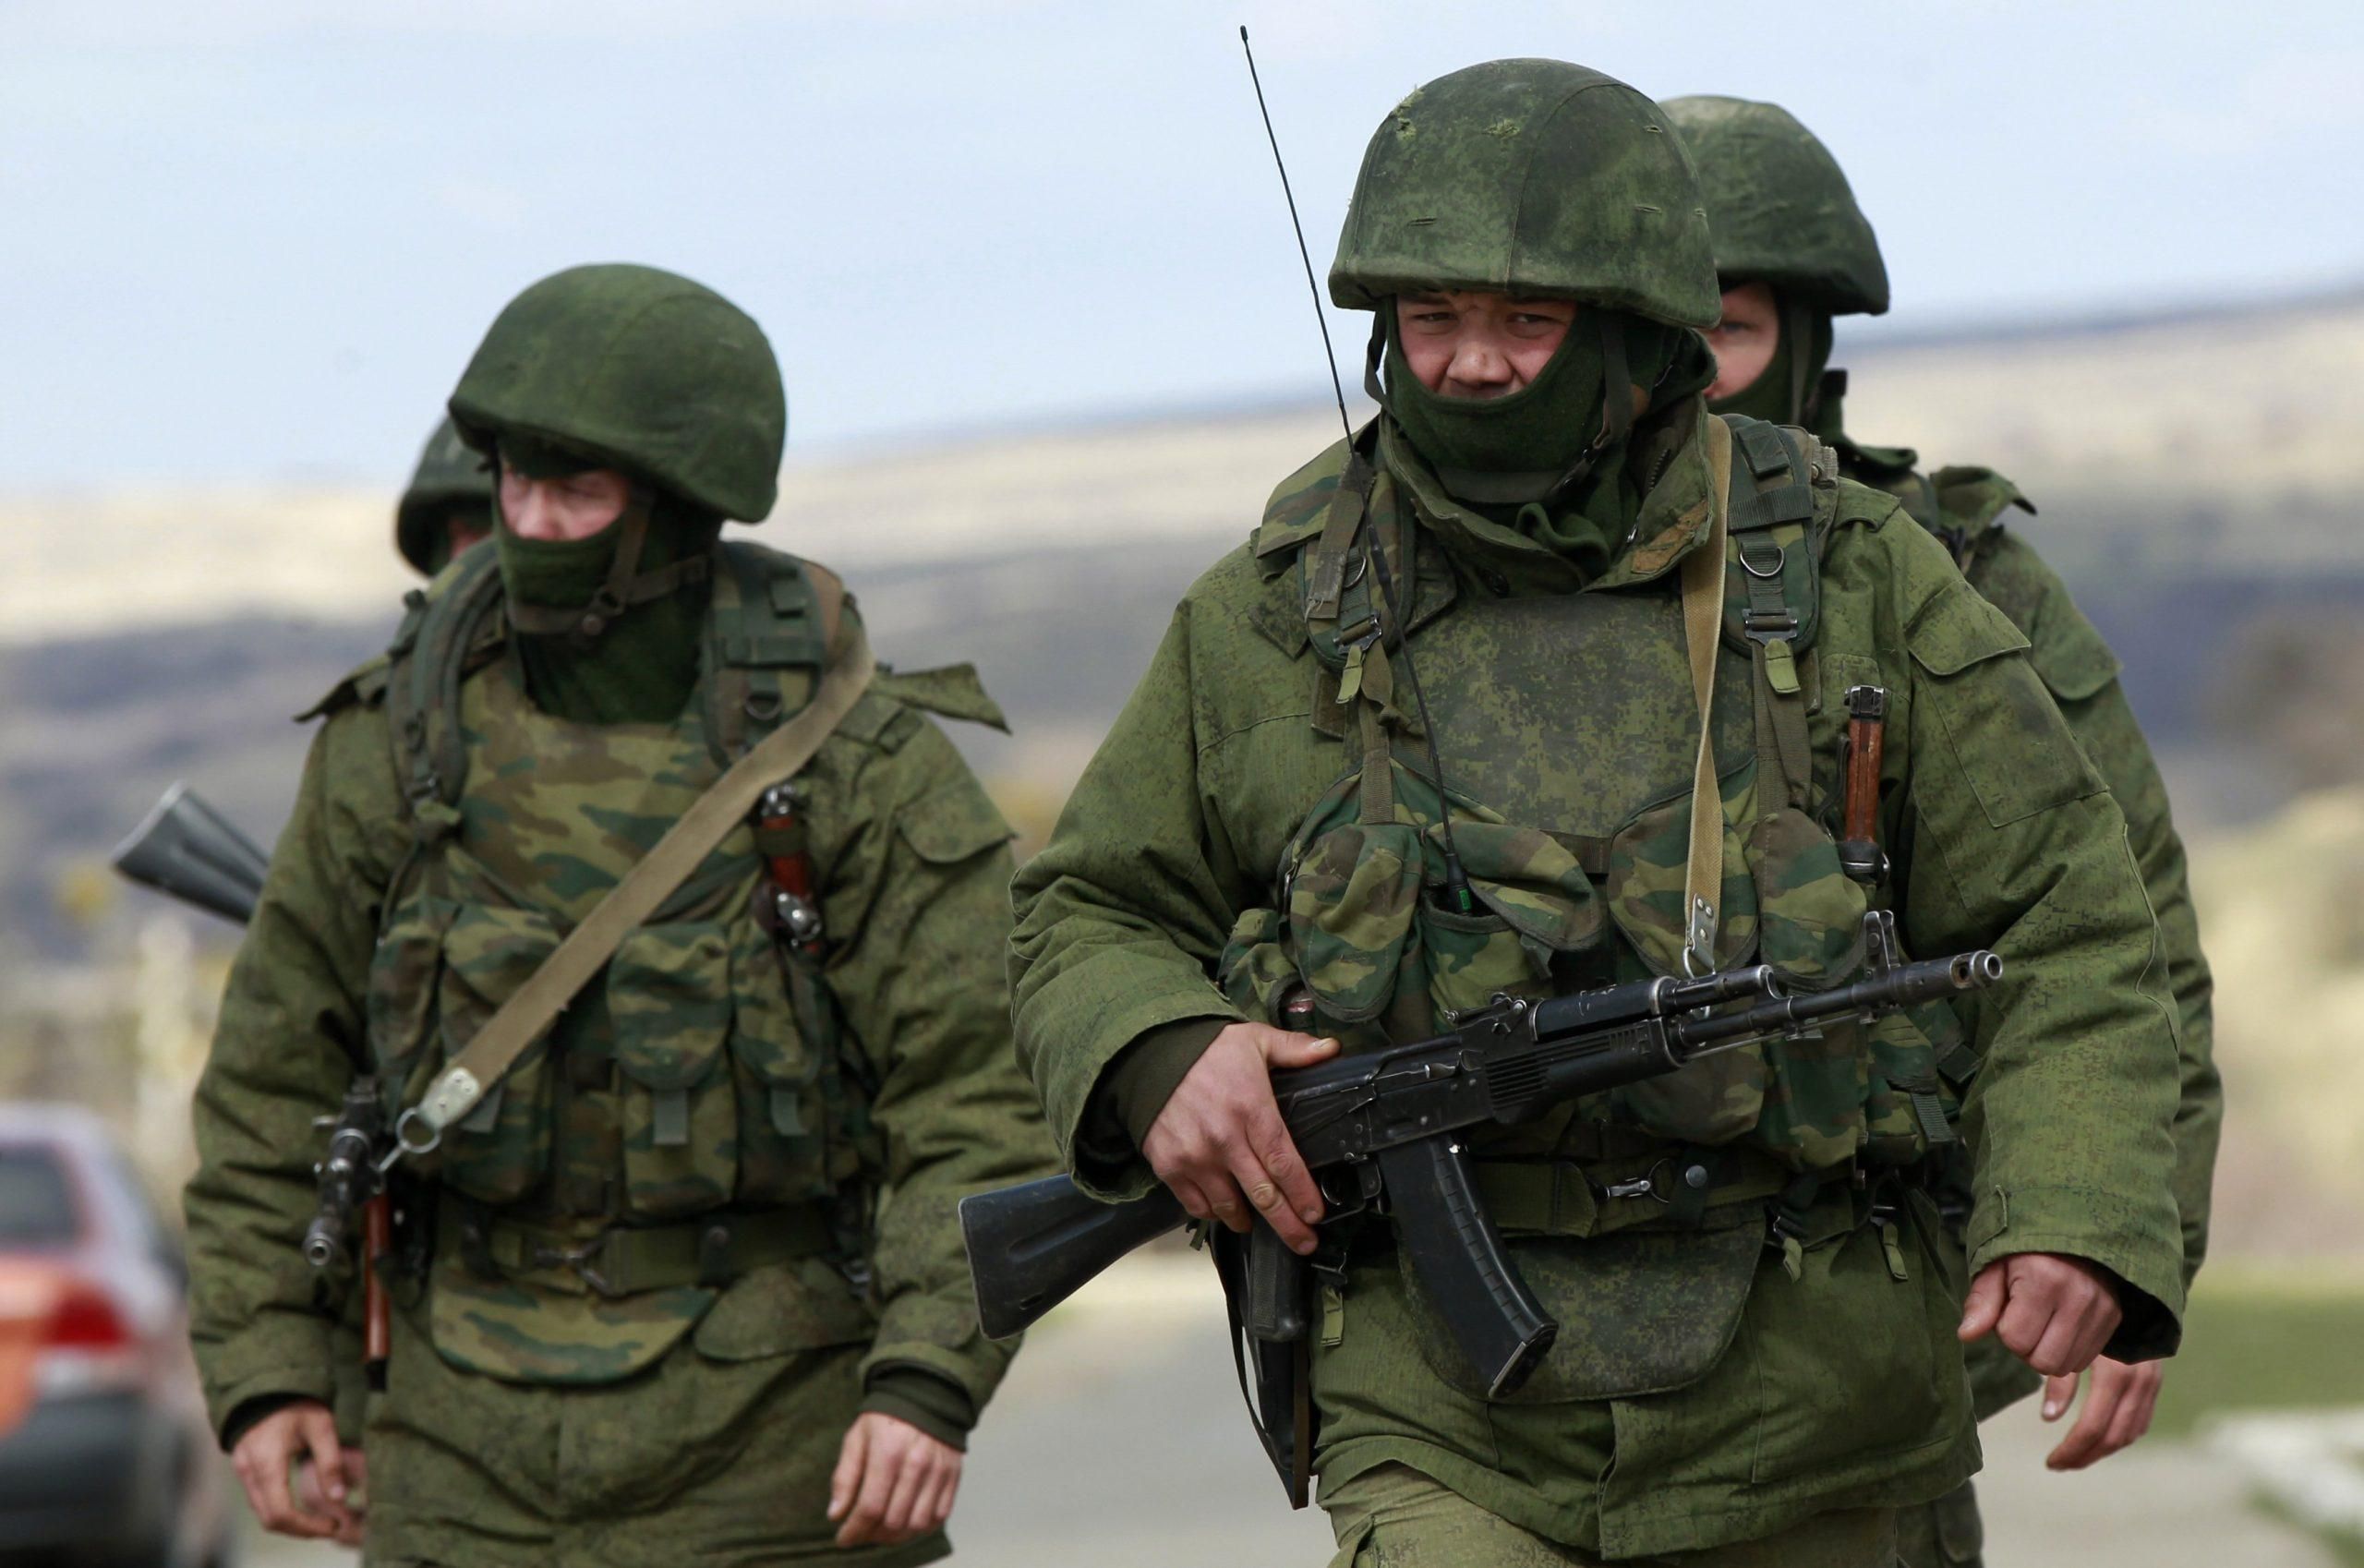 Украина требует от России информацию об учениях возле границ: у Кремля есть 2 суток на ответ